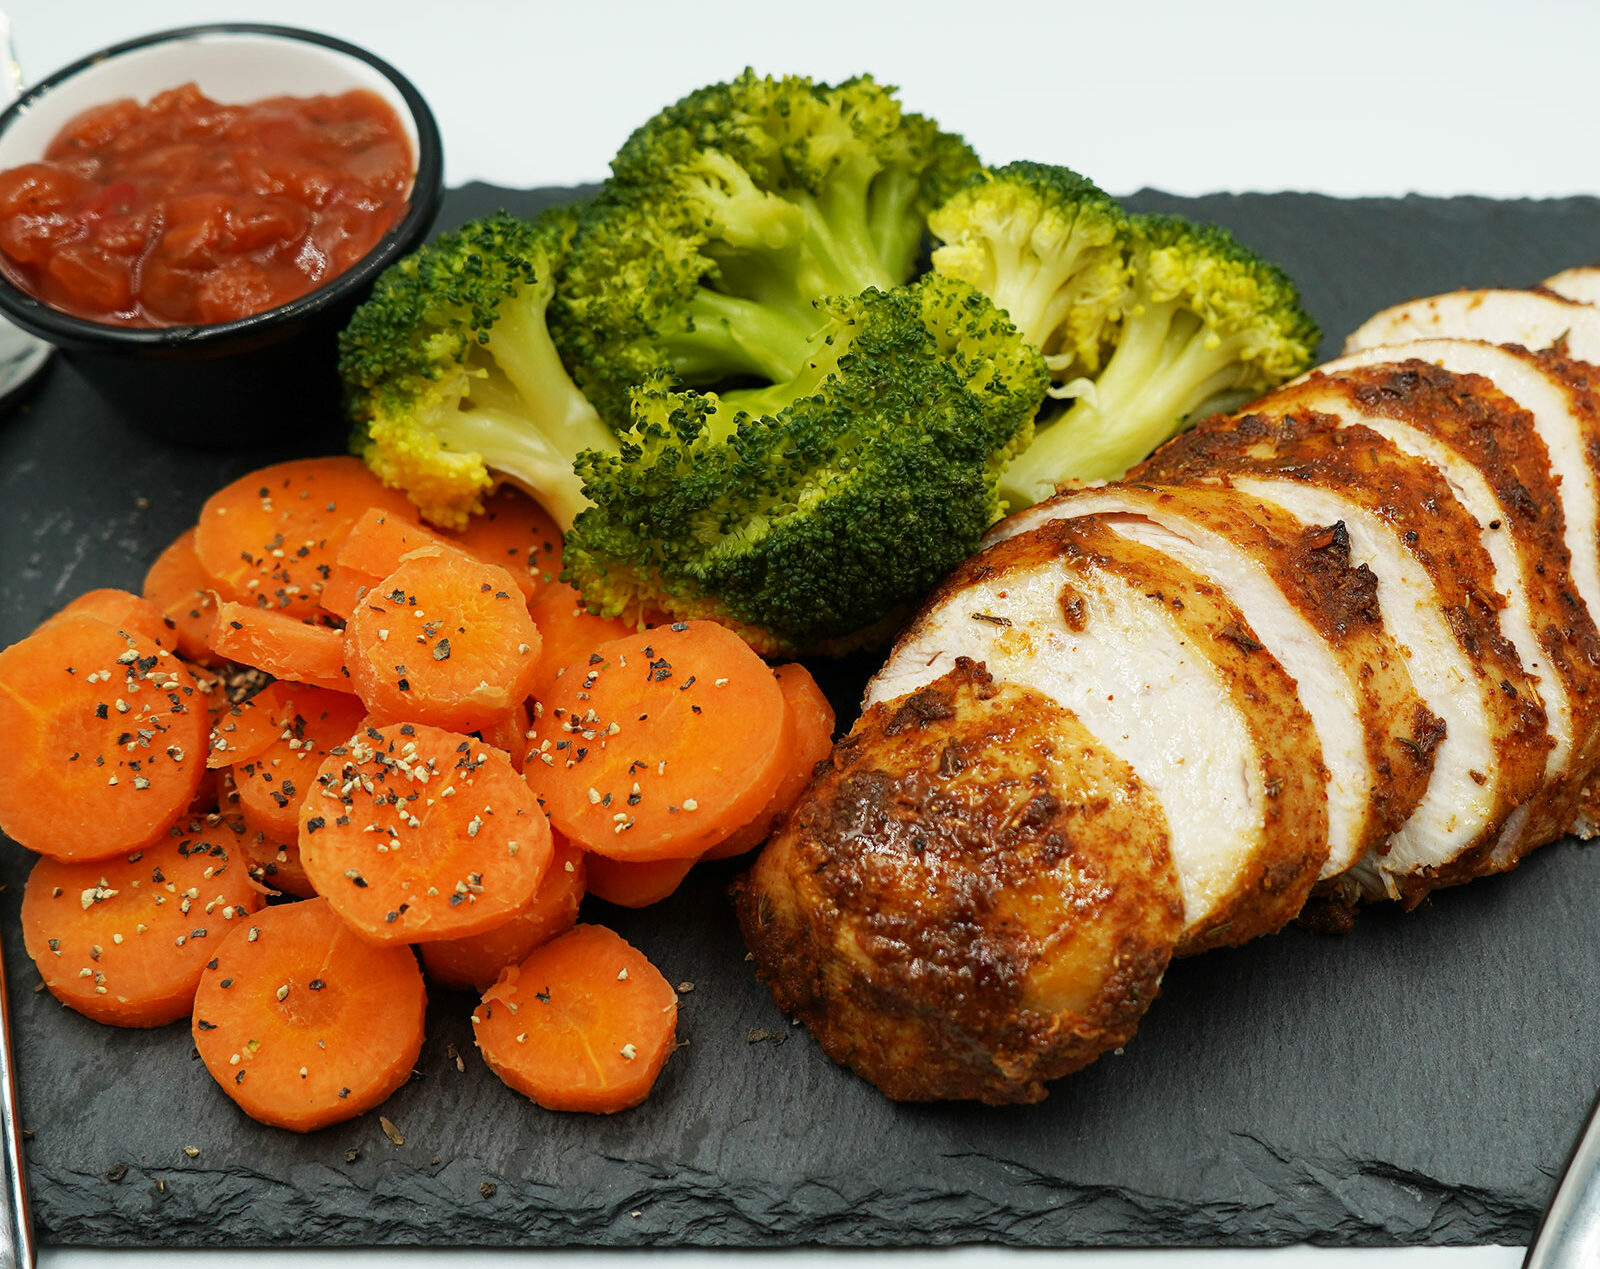 Ức gà nướng rau củ là một trong những món ăn giúp giảm cân, lên cơ.